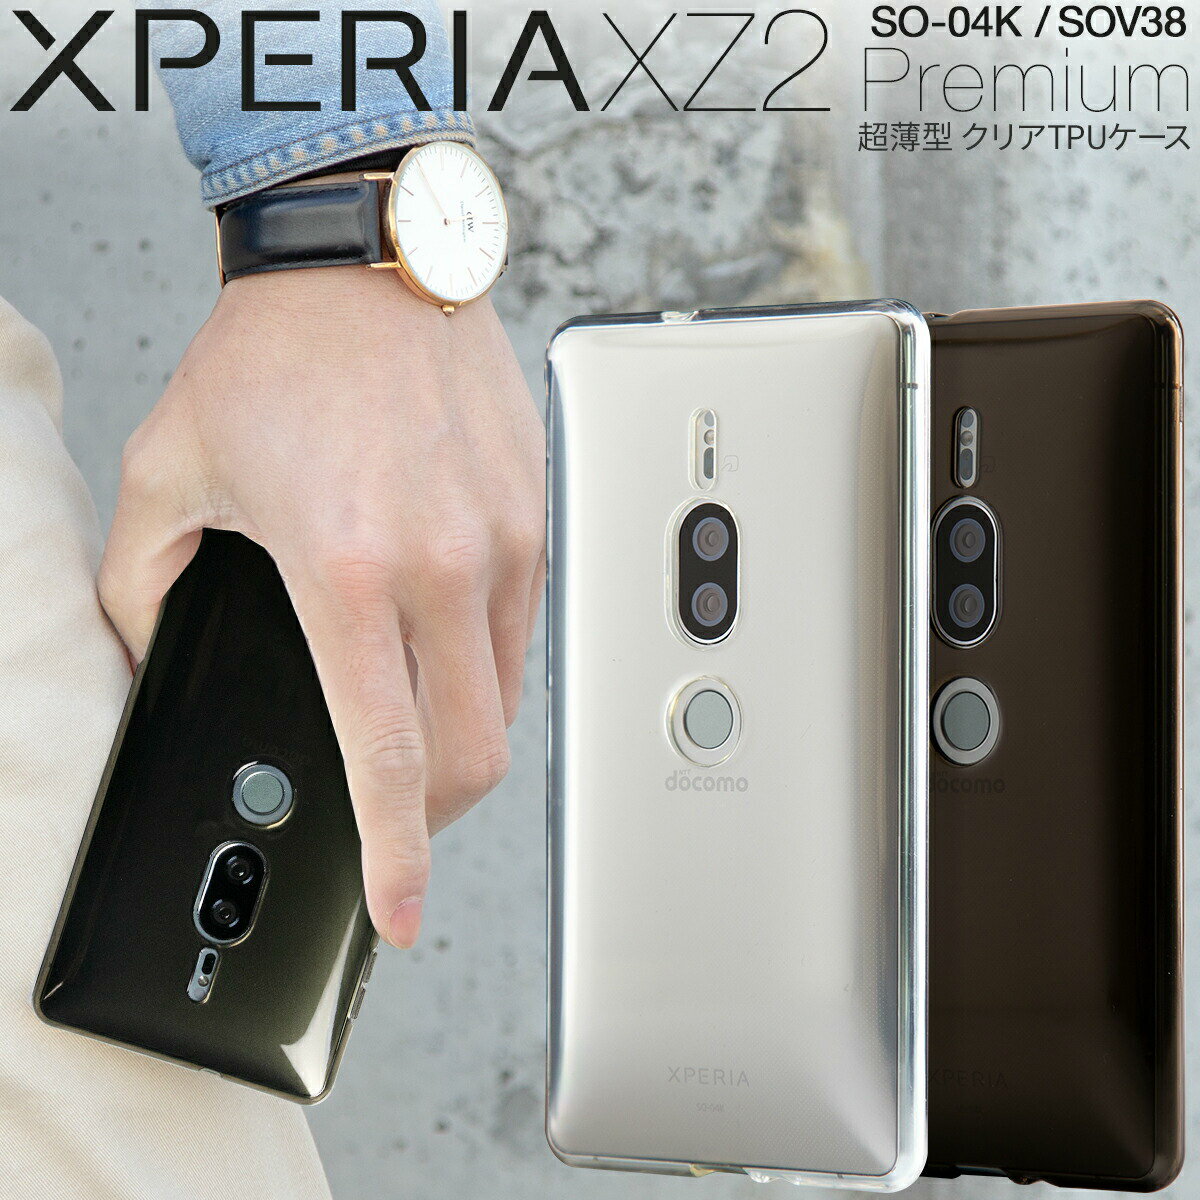  Xperia XZ2 Premium スマホケース 韓国 SO-04K SOV38 TPU スマホ ケース カバー クリアケース エクスペリア エックスゼット2プレミアム ソフトケース 携帯 人気 シンプル ポイント消化 sale 携帯ケース 携帯カバー